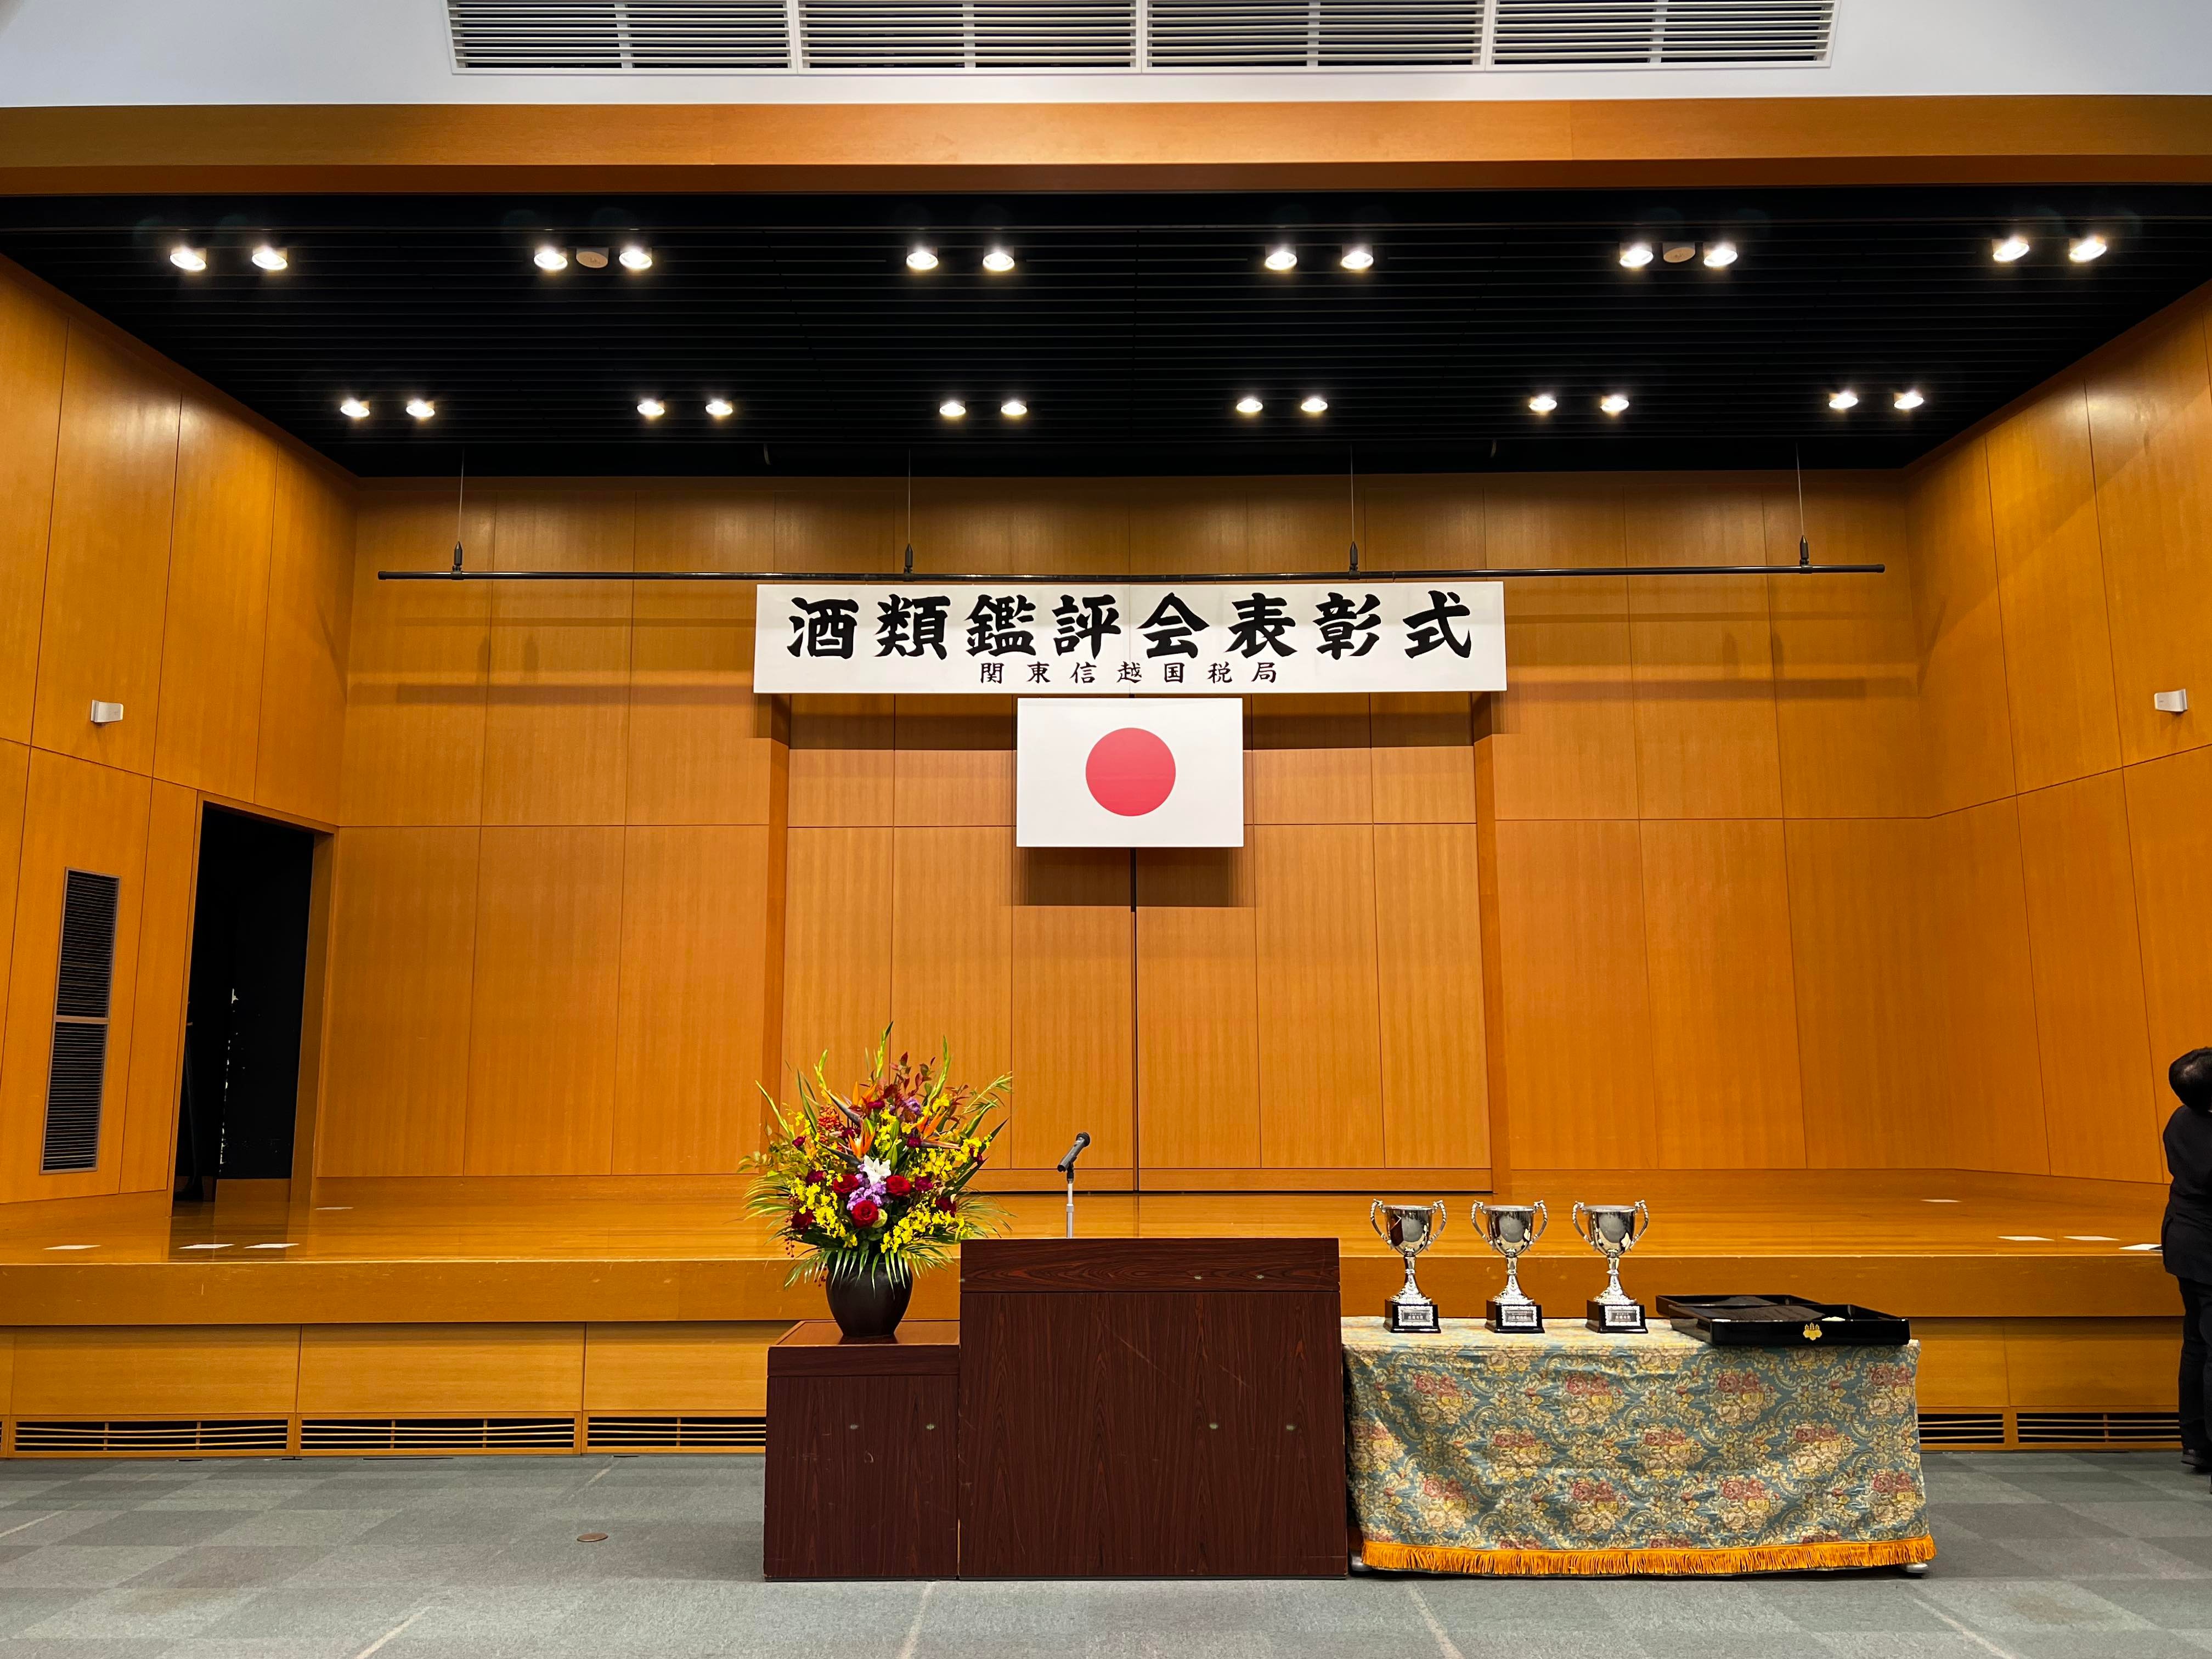 2022.11.09.　第93回関東信越国税局酒類鑑評会 にて特別賞、優秀賞をＷ受賞致しました。